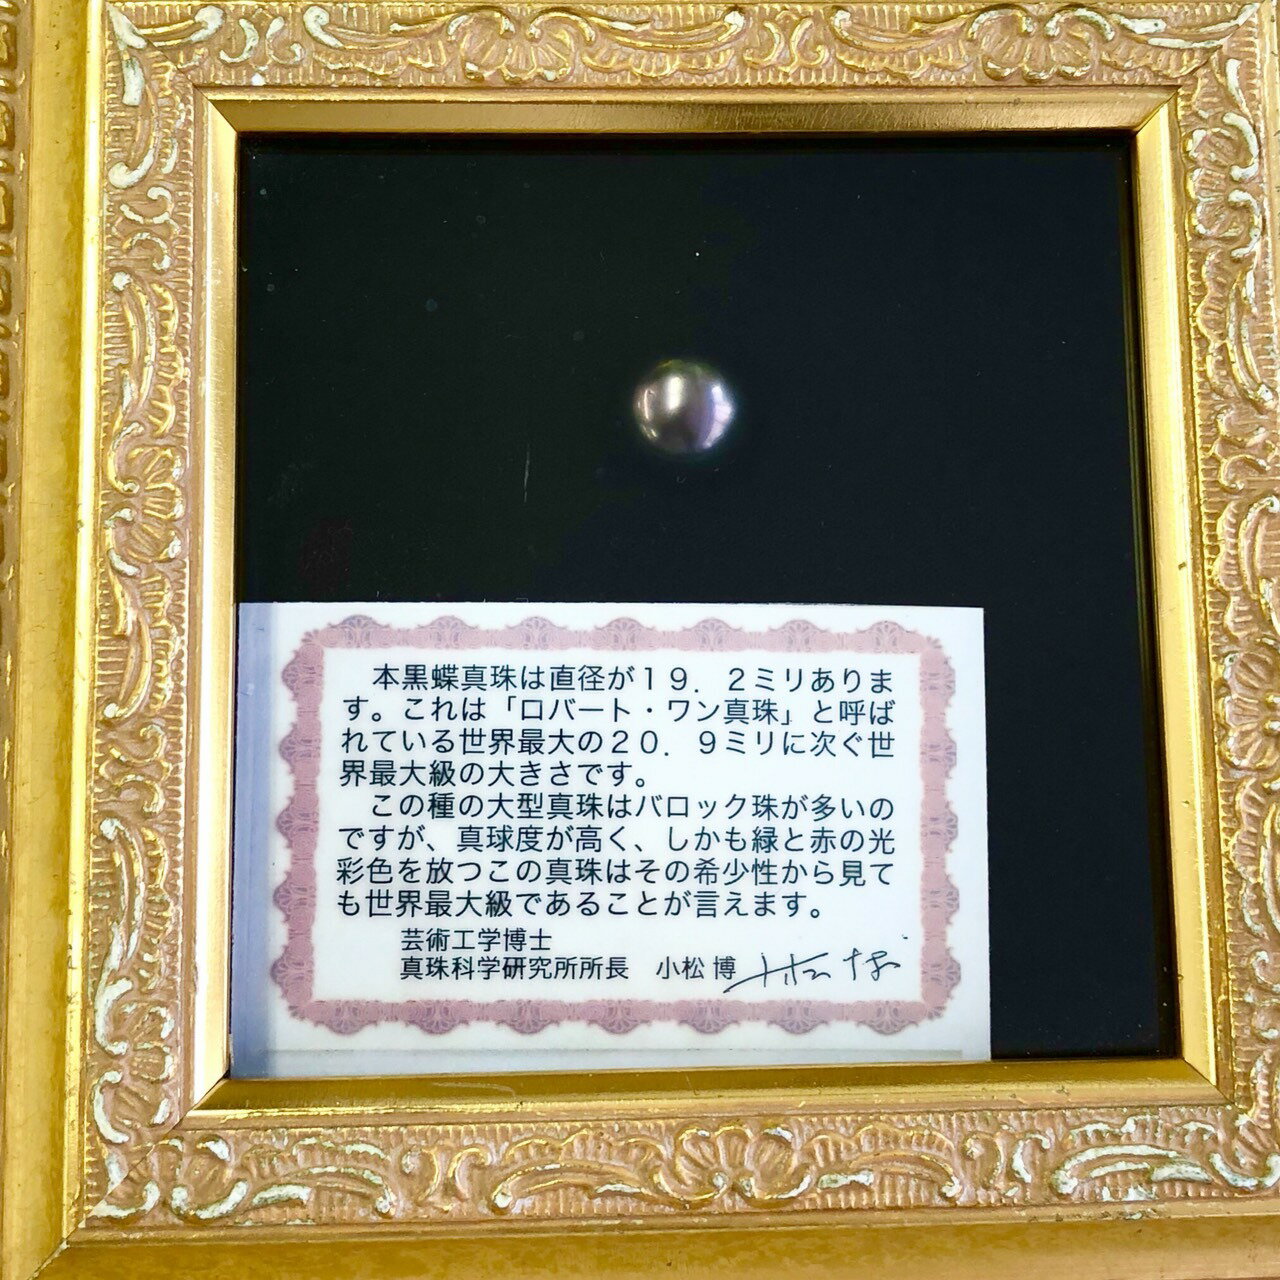 【鑑別書付】世界最大級 本黒蝶真珠 パール 19mm